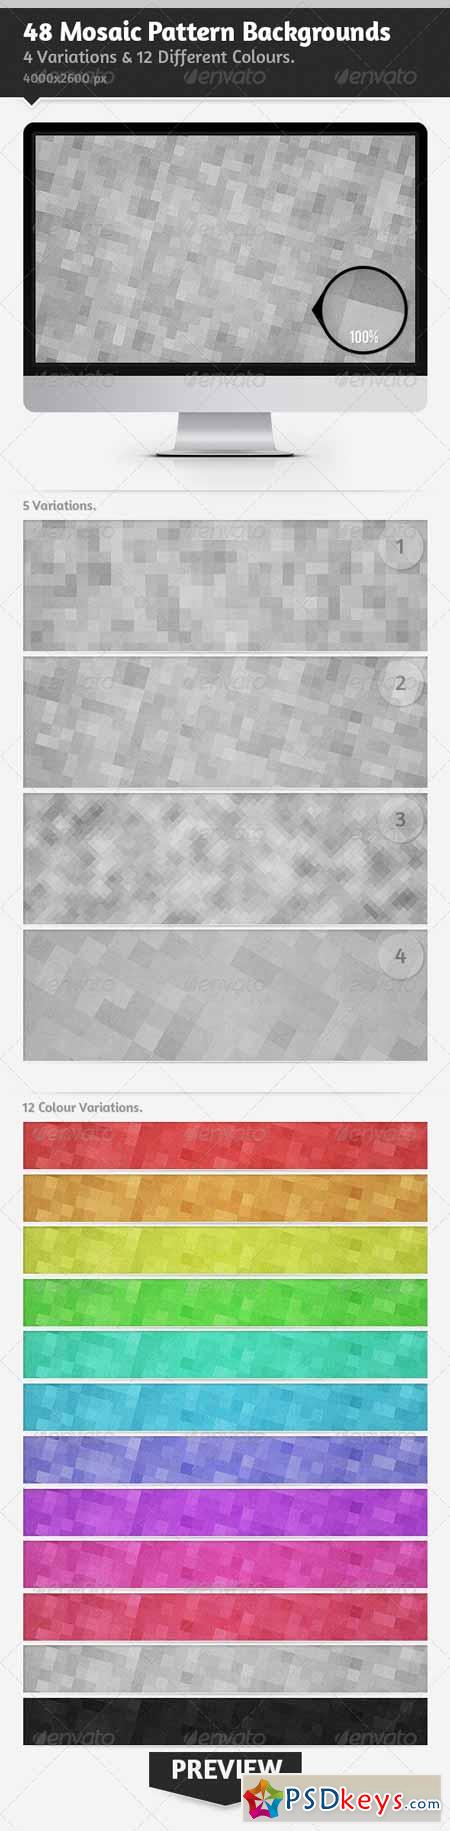 48 Mosaic Pattern Backgrounds 4479586